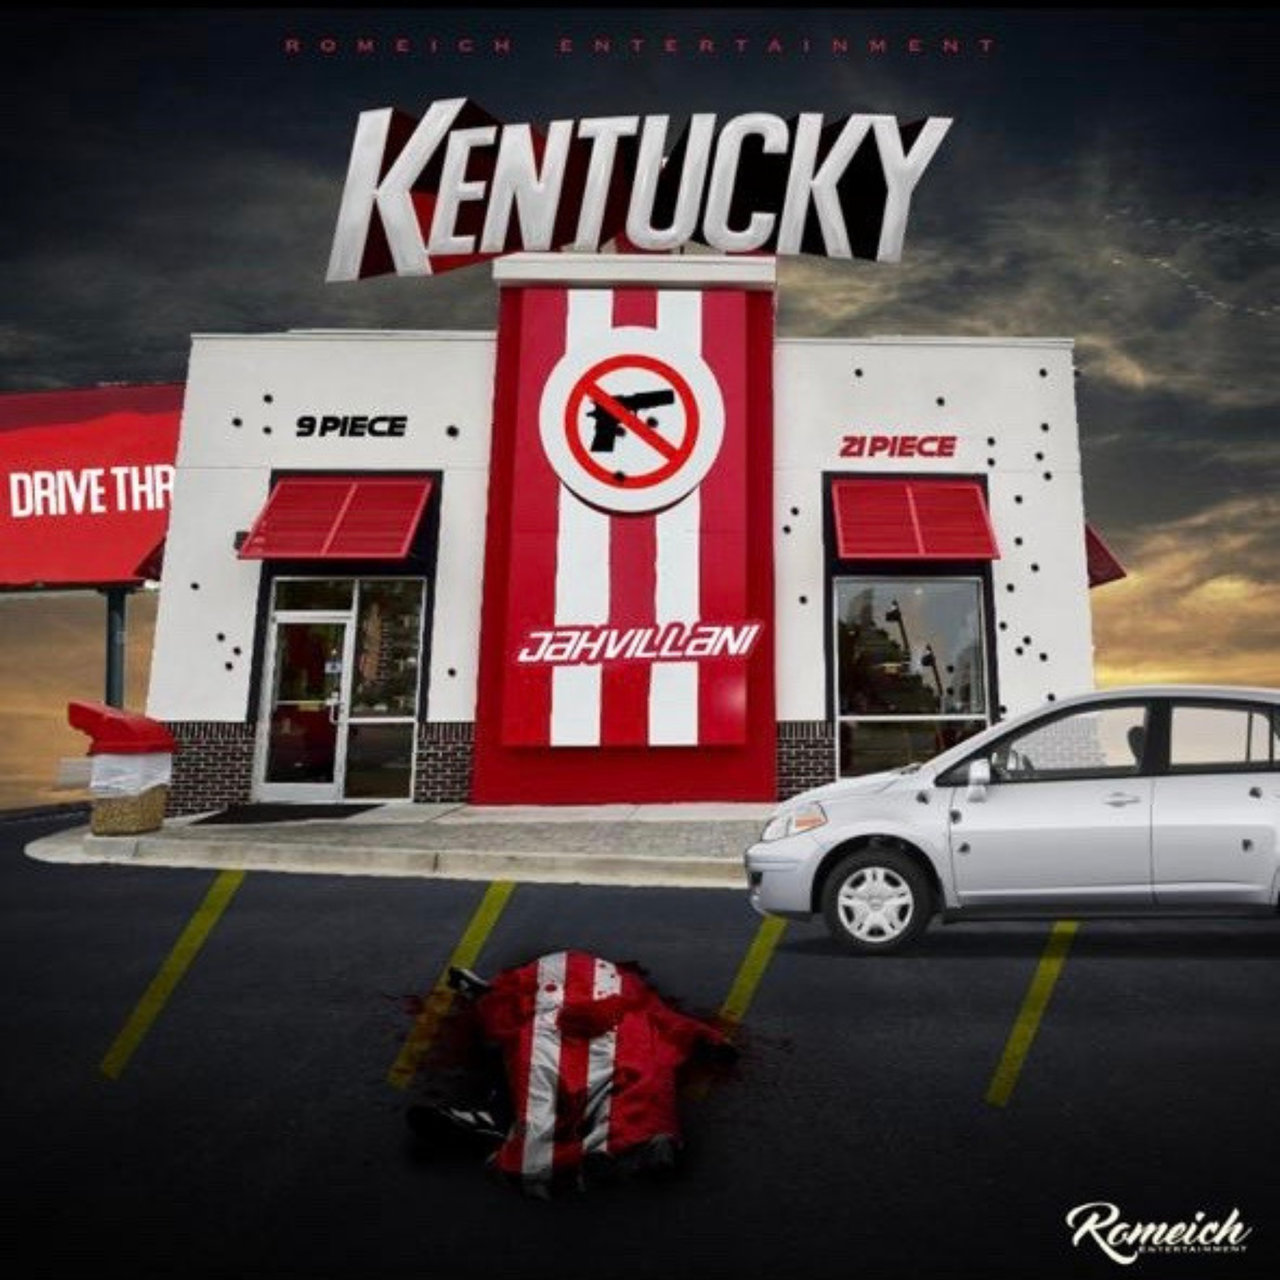 Jahvillani - Kentucky (Cover)